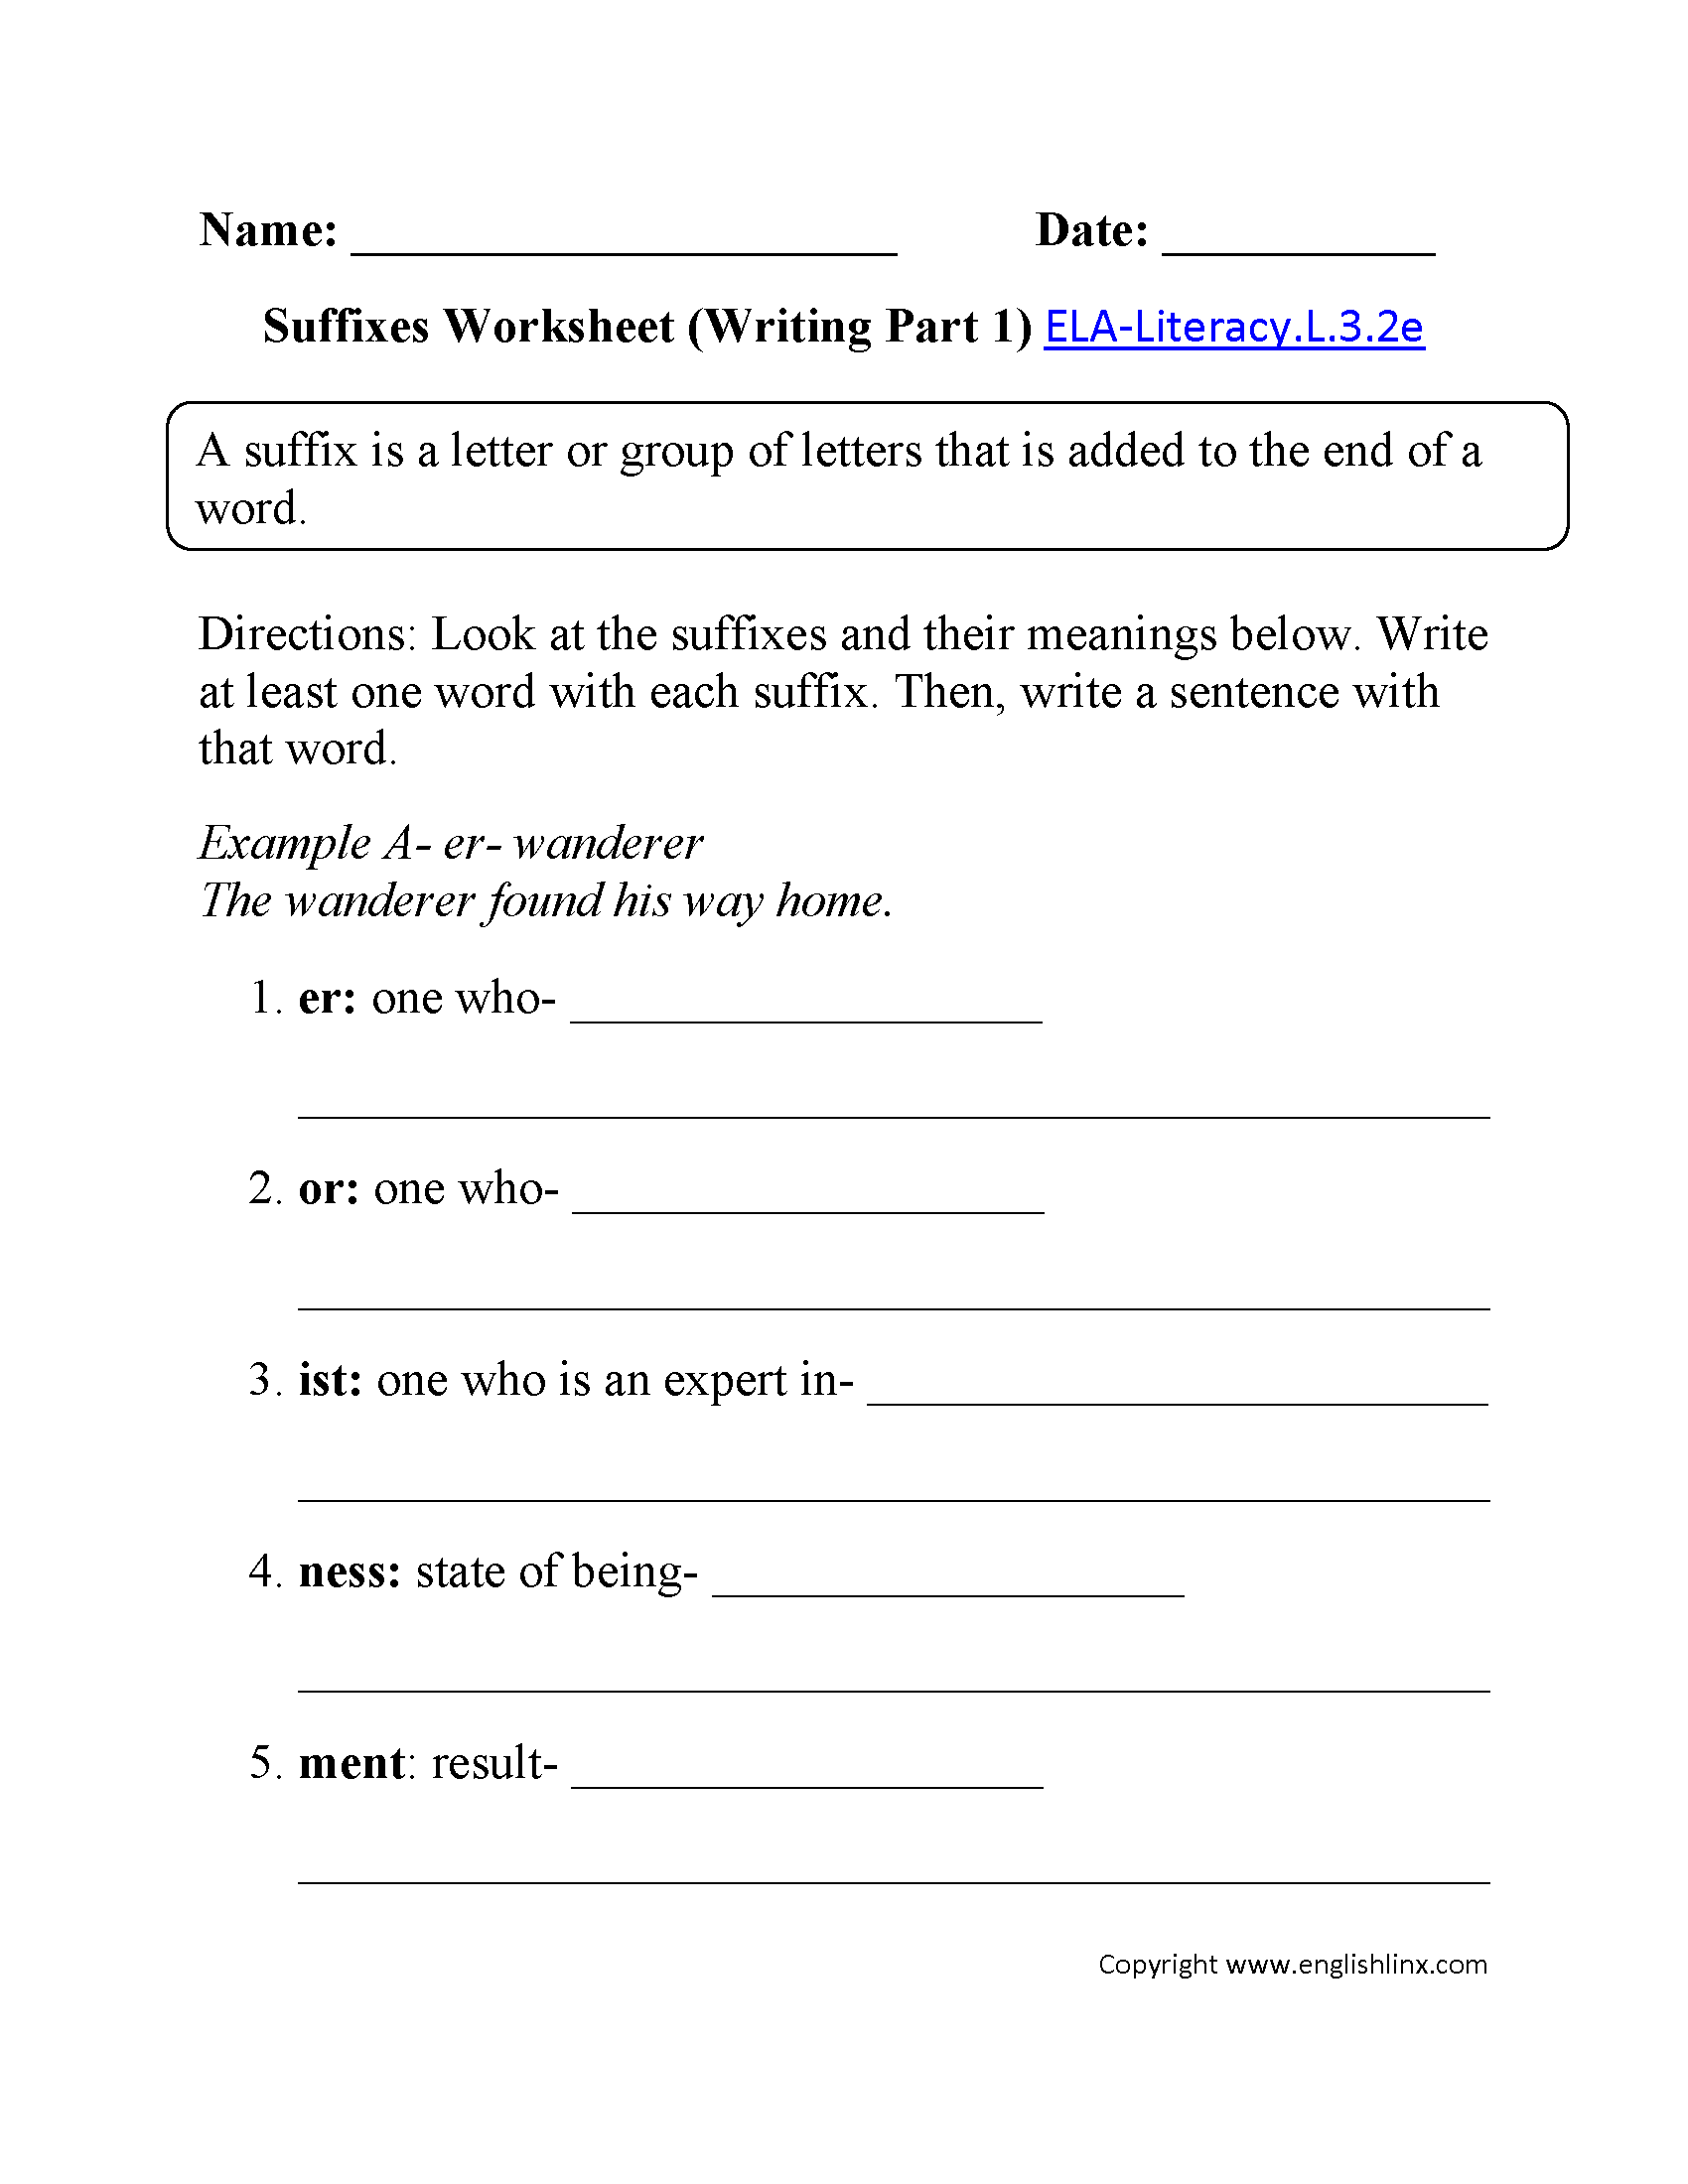 Suffixes Worksheet 1 ELA-Literacy.L.3.2e Language Worksheet